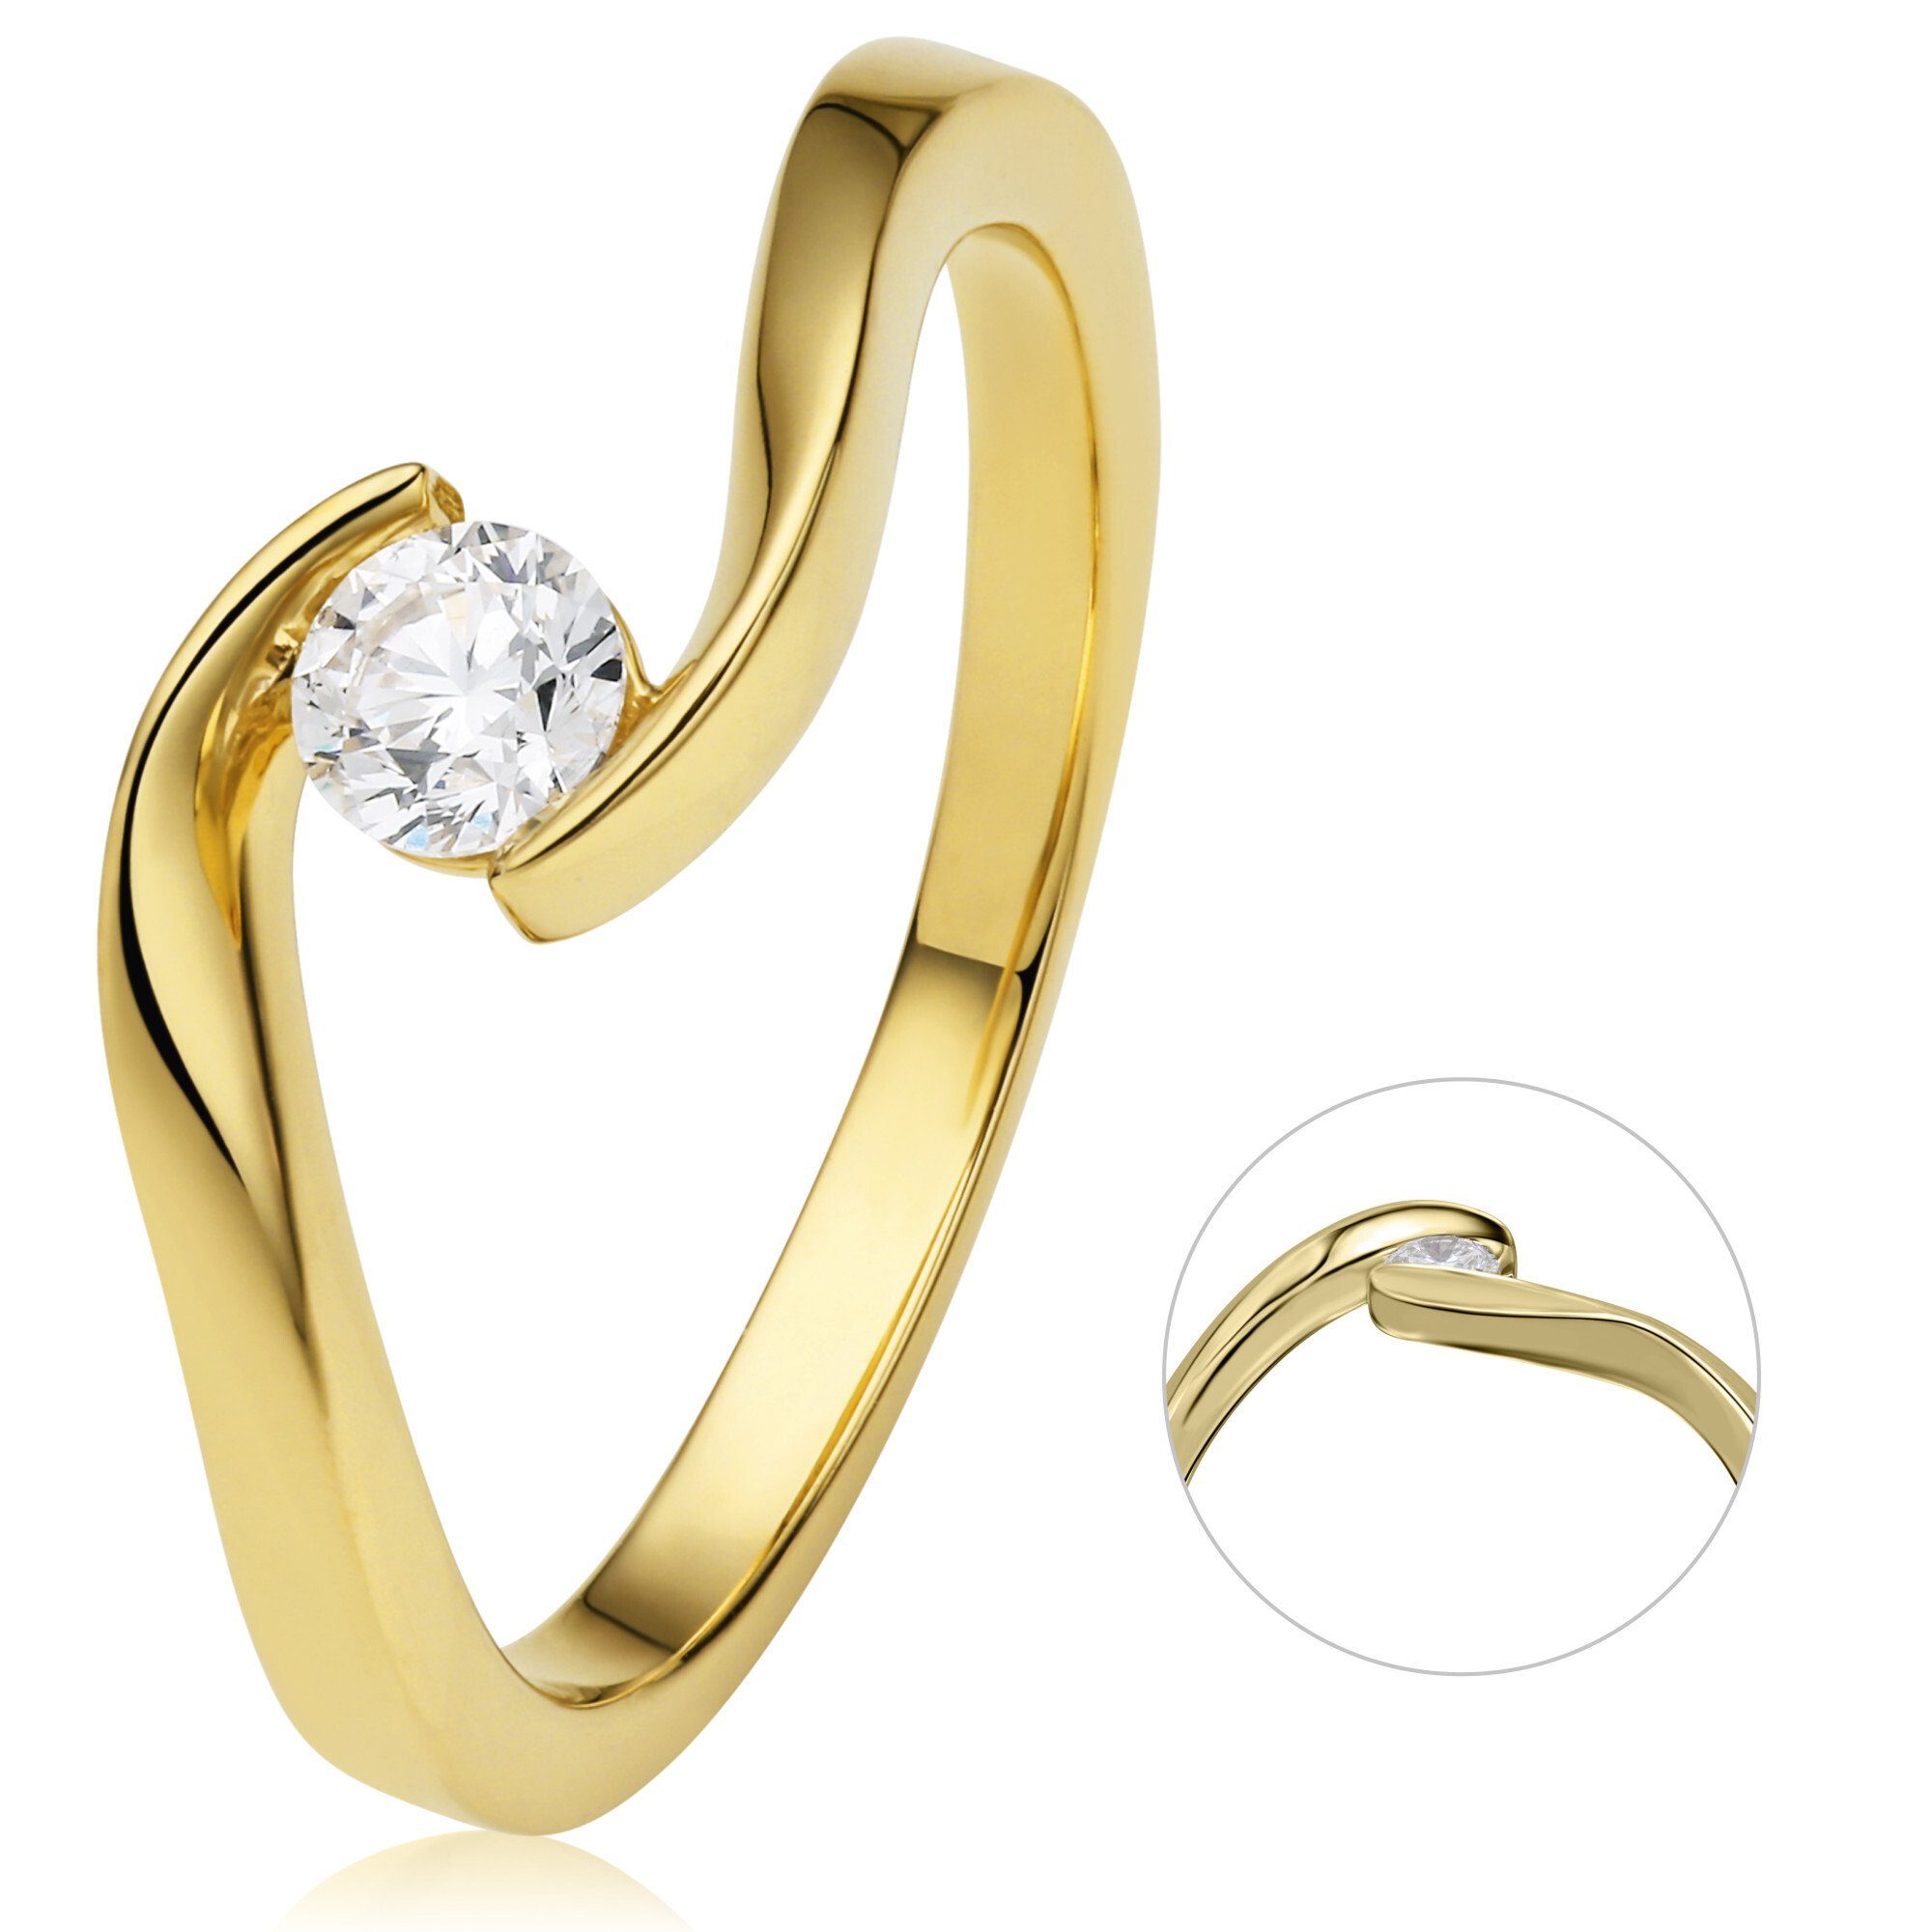 Schmuck Spannfassung Damen Diamantring Brillant ONE ELEMENT Gelbgold, Gold 750 Diamant Spannfassung 0,25 ct aus Ring